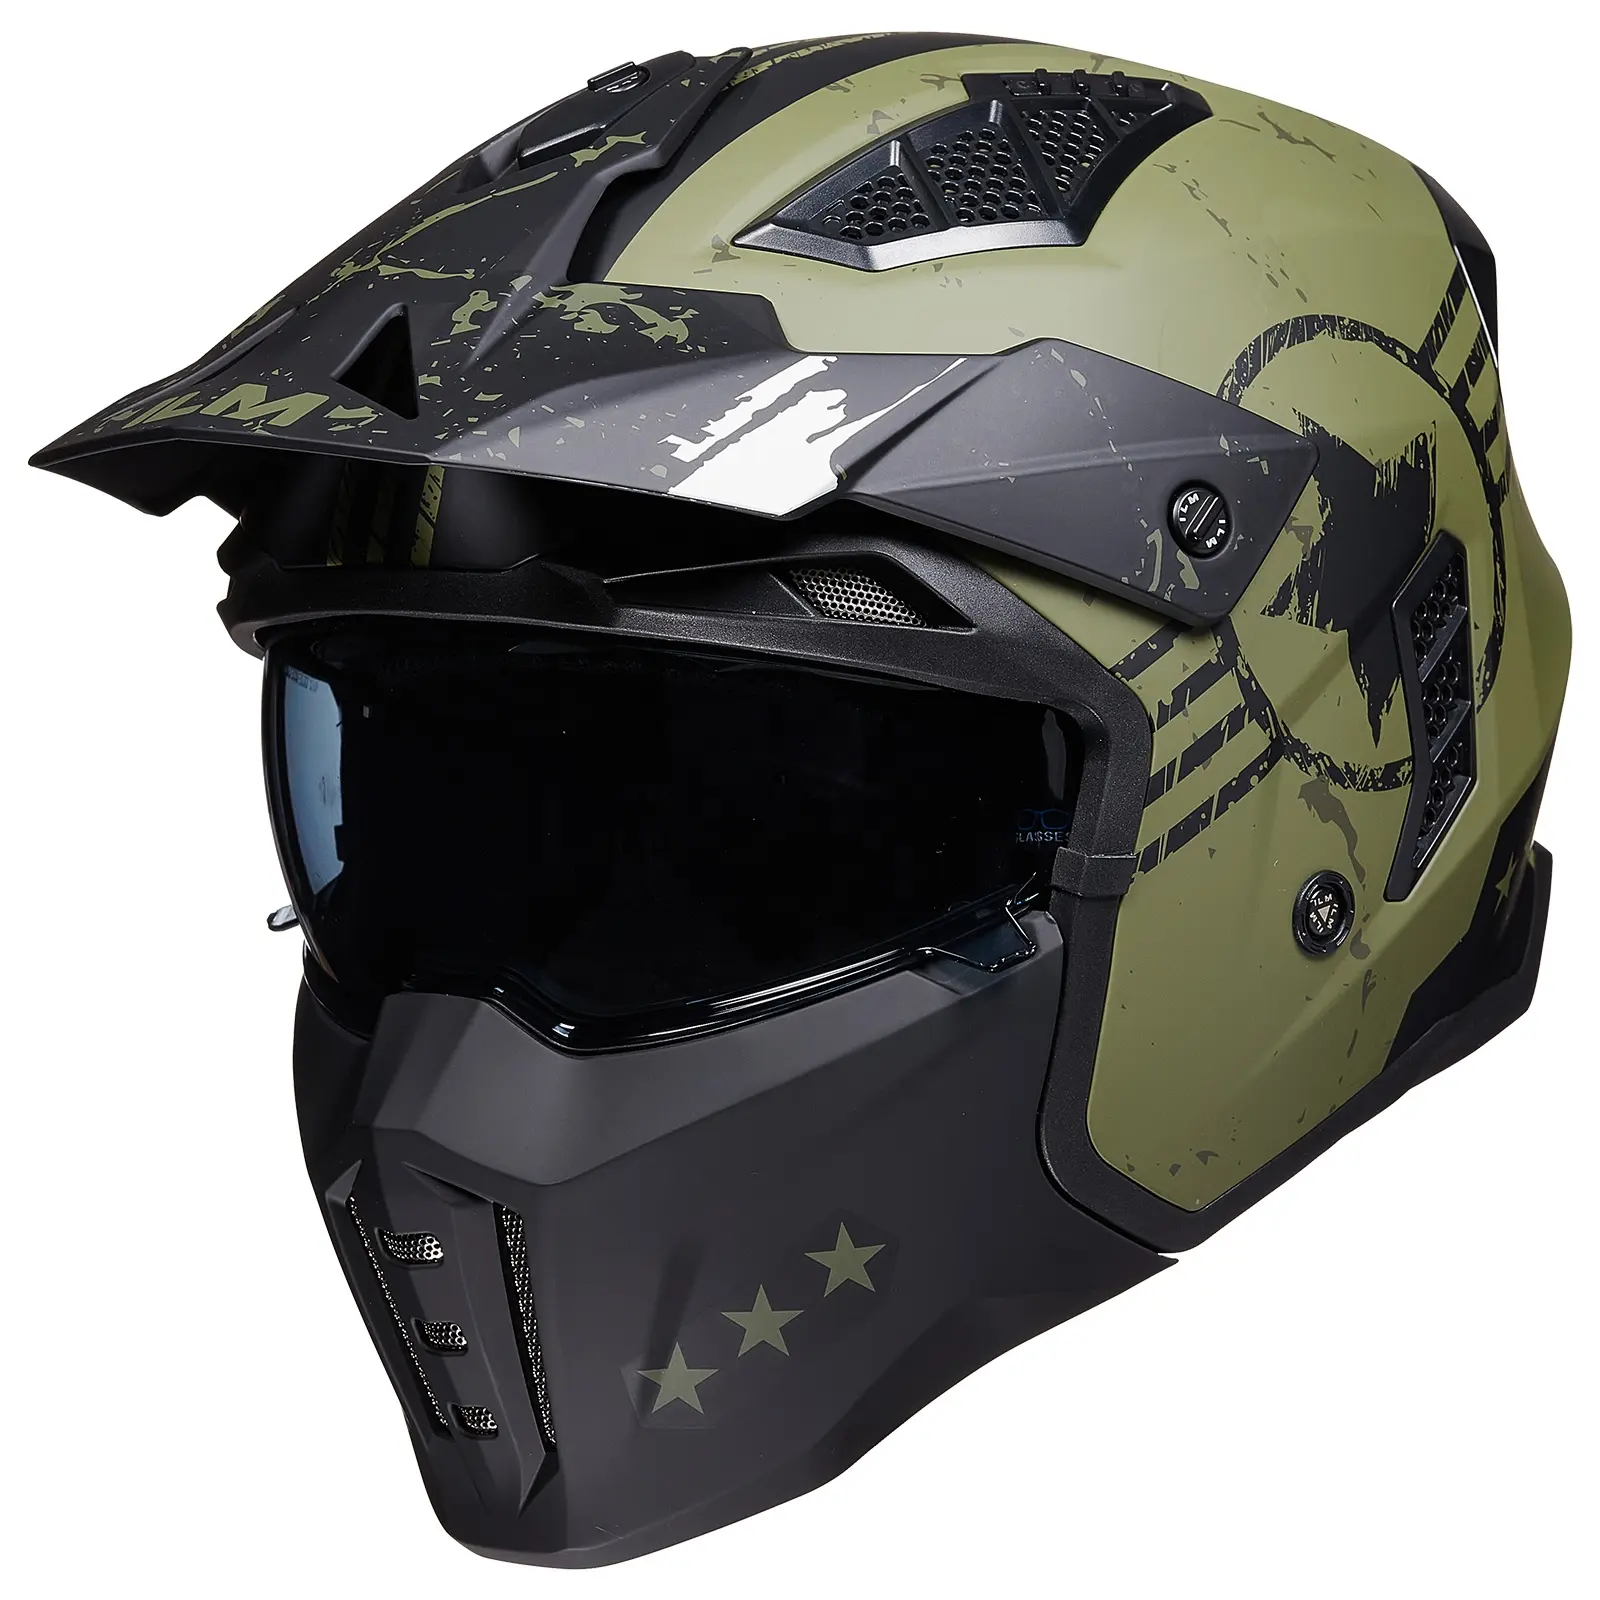 ILM Z302 оптовая продажа мотоциклетных шлемов, закрывающих лицо